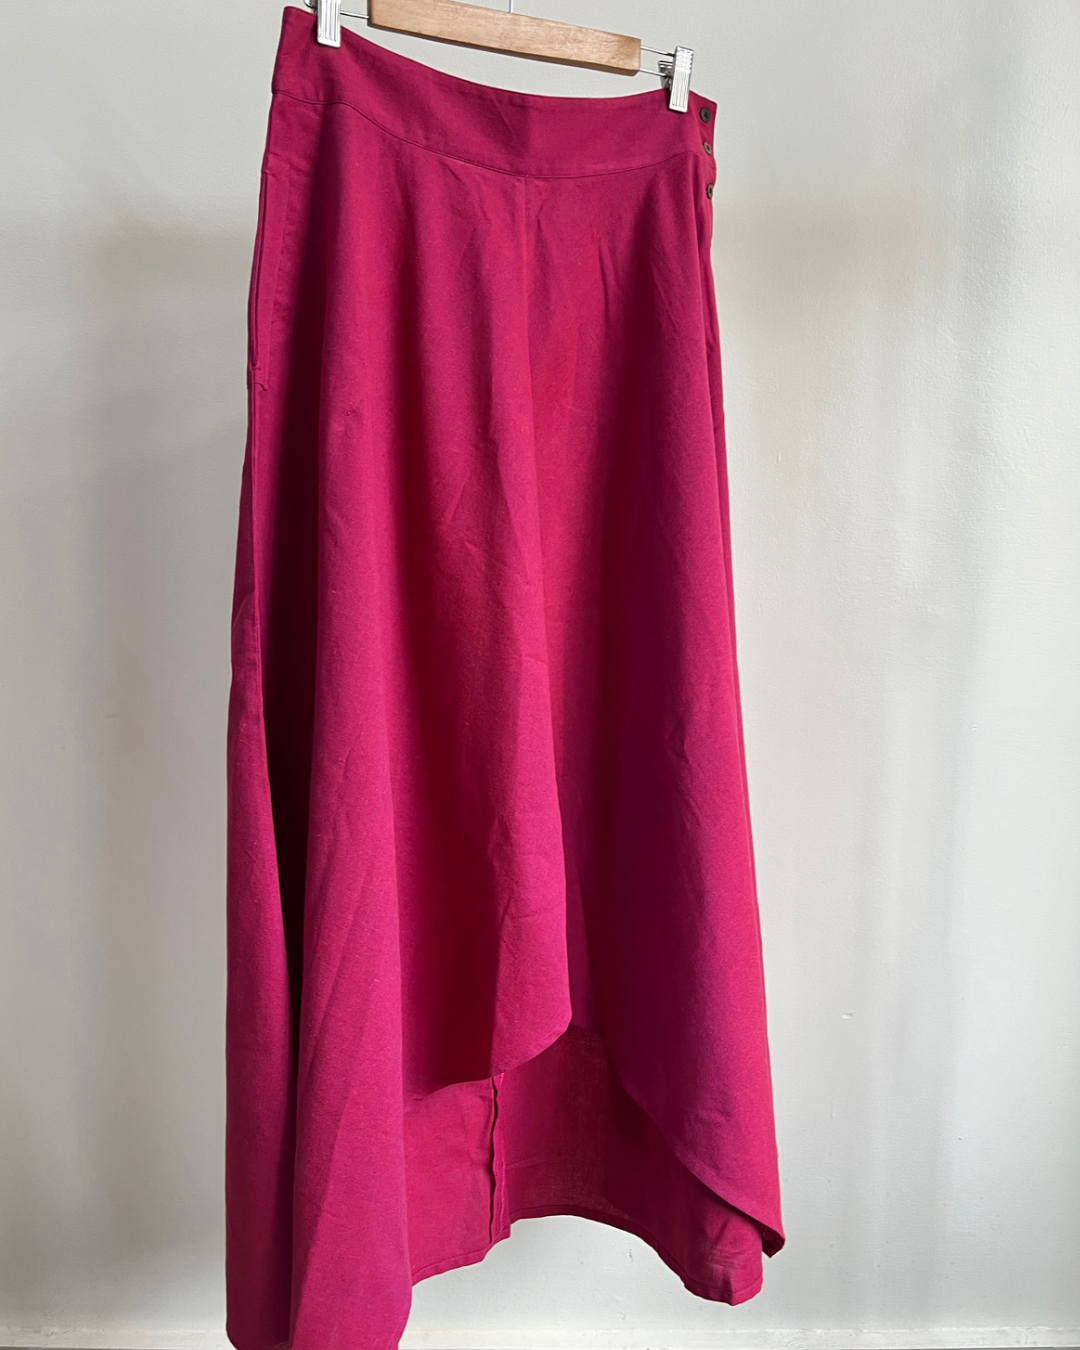 Adhira Skirt - Dark Pink Cotton